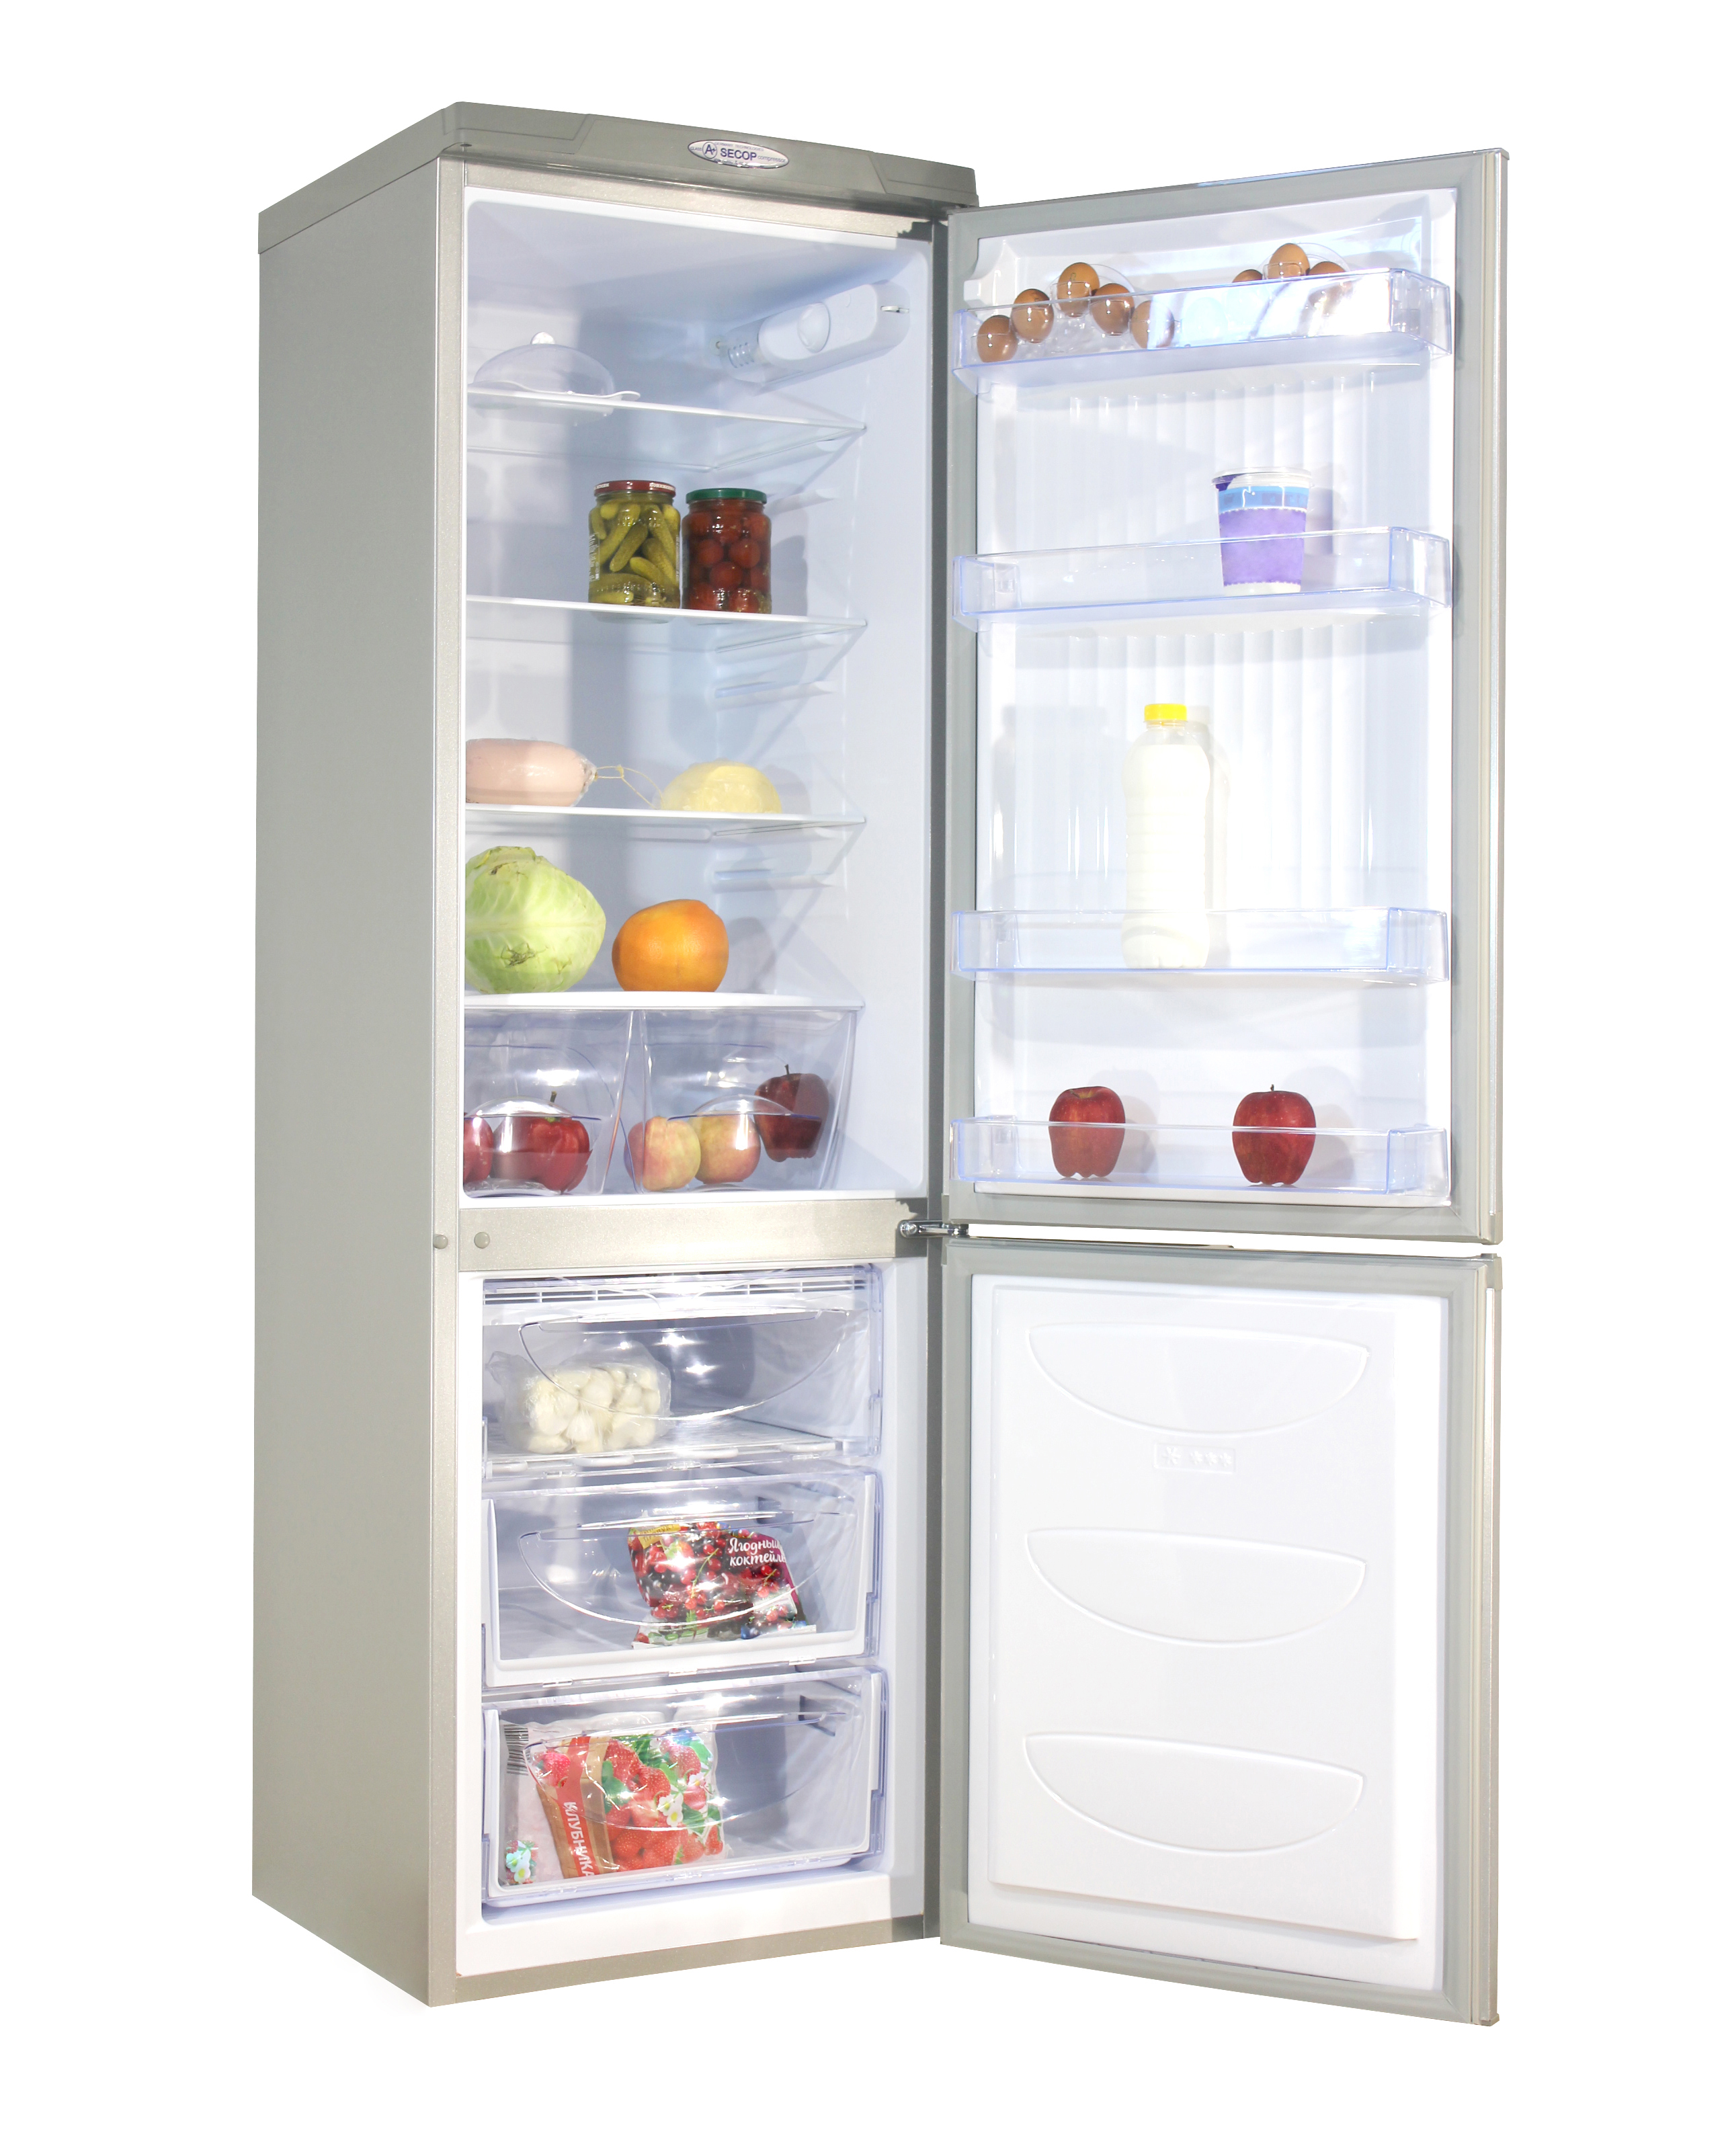 Купить холодильник в воронеже недорого. Холодильник Дон r291. Холодильник don r-291 mi. Холодильник don r-291 ng нерж.сталь. Холодильник don r-291 005 mi.